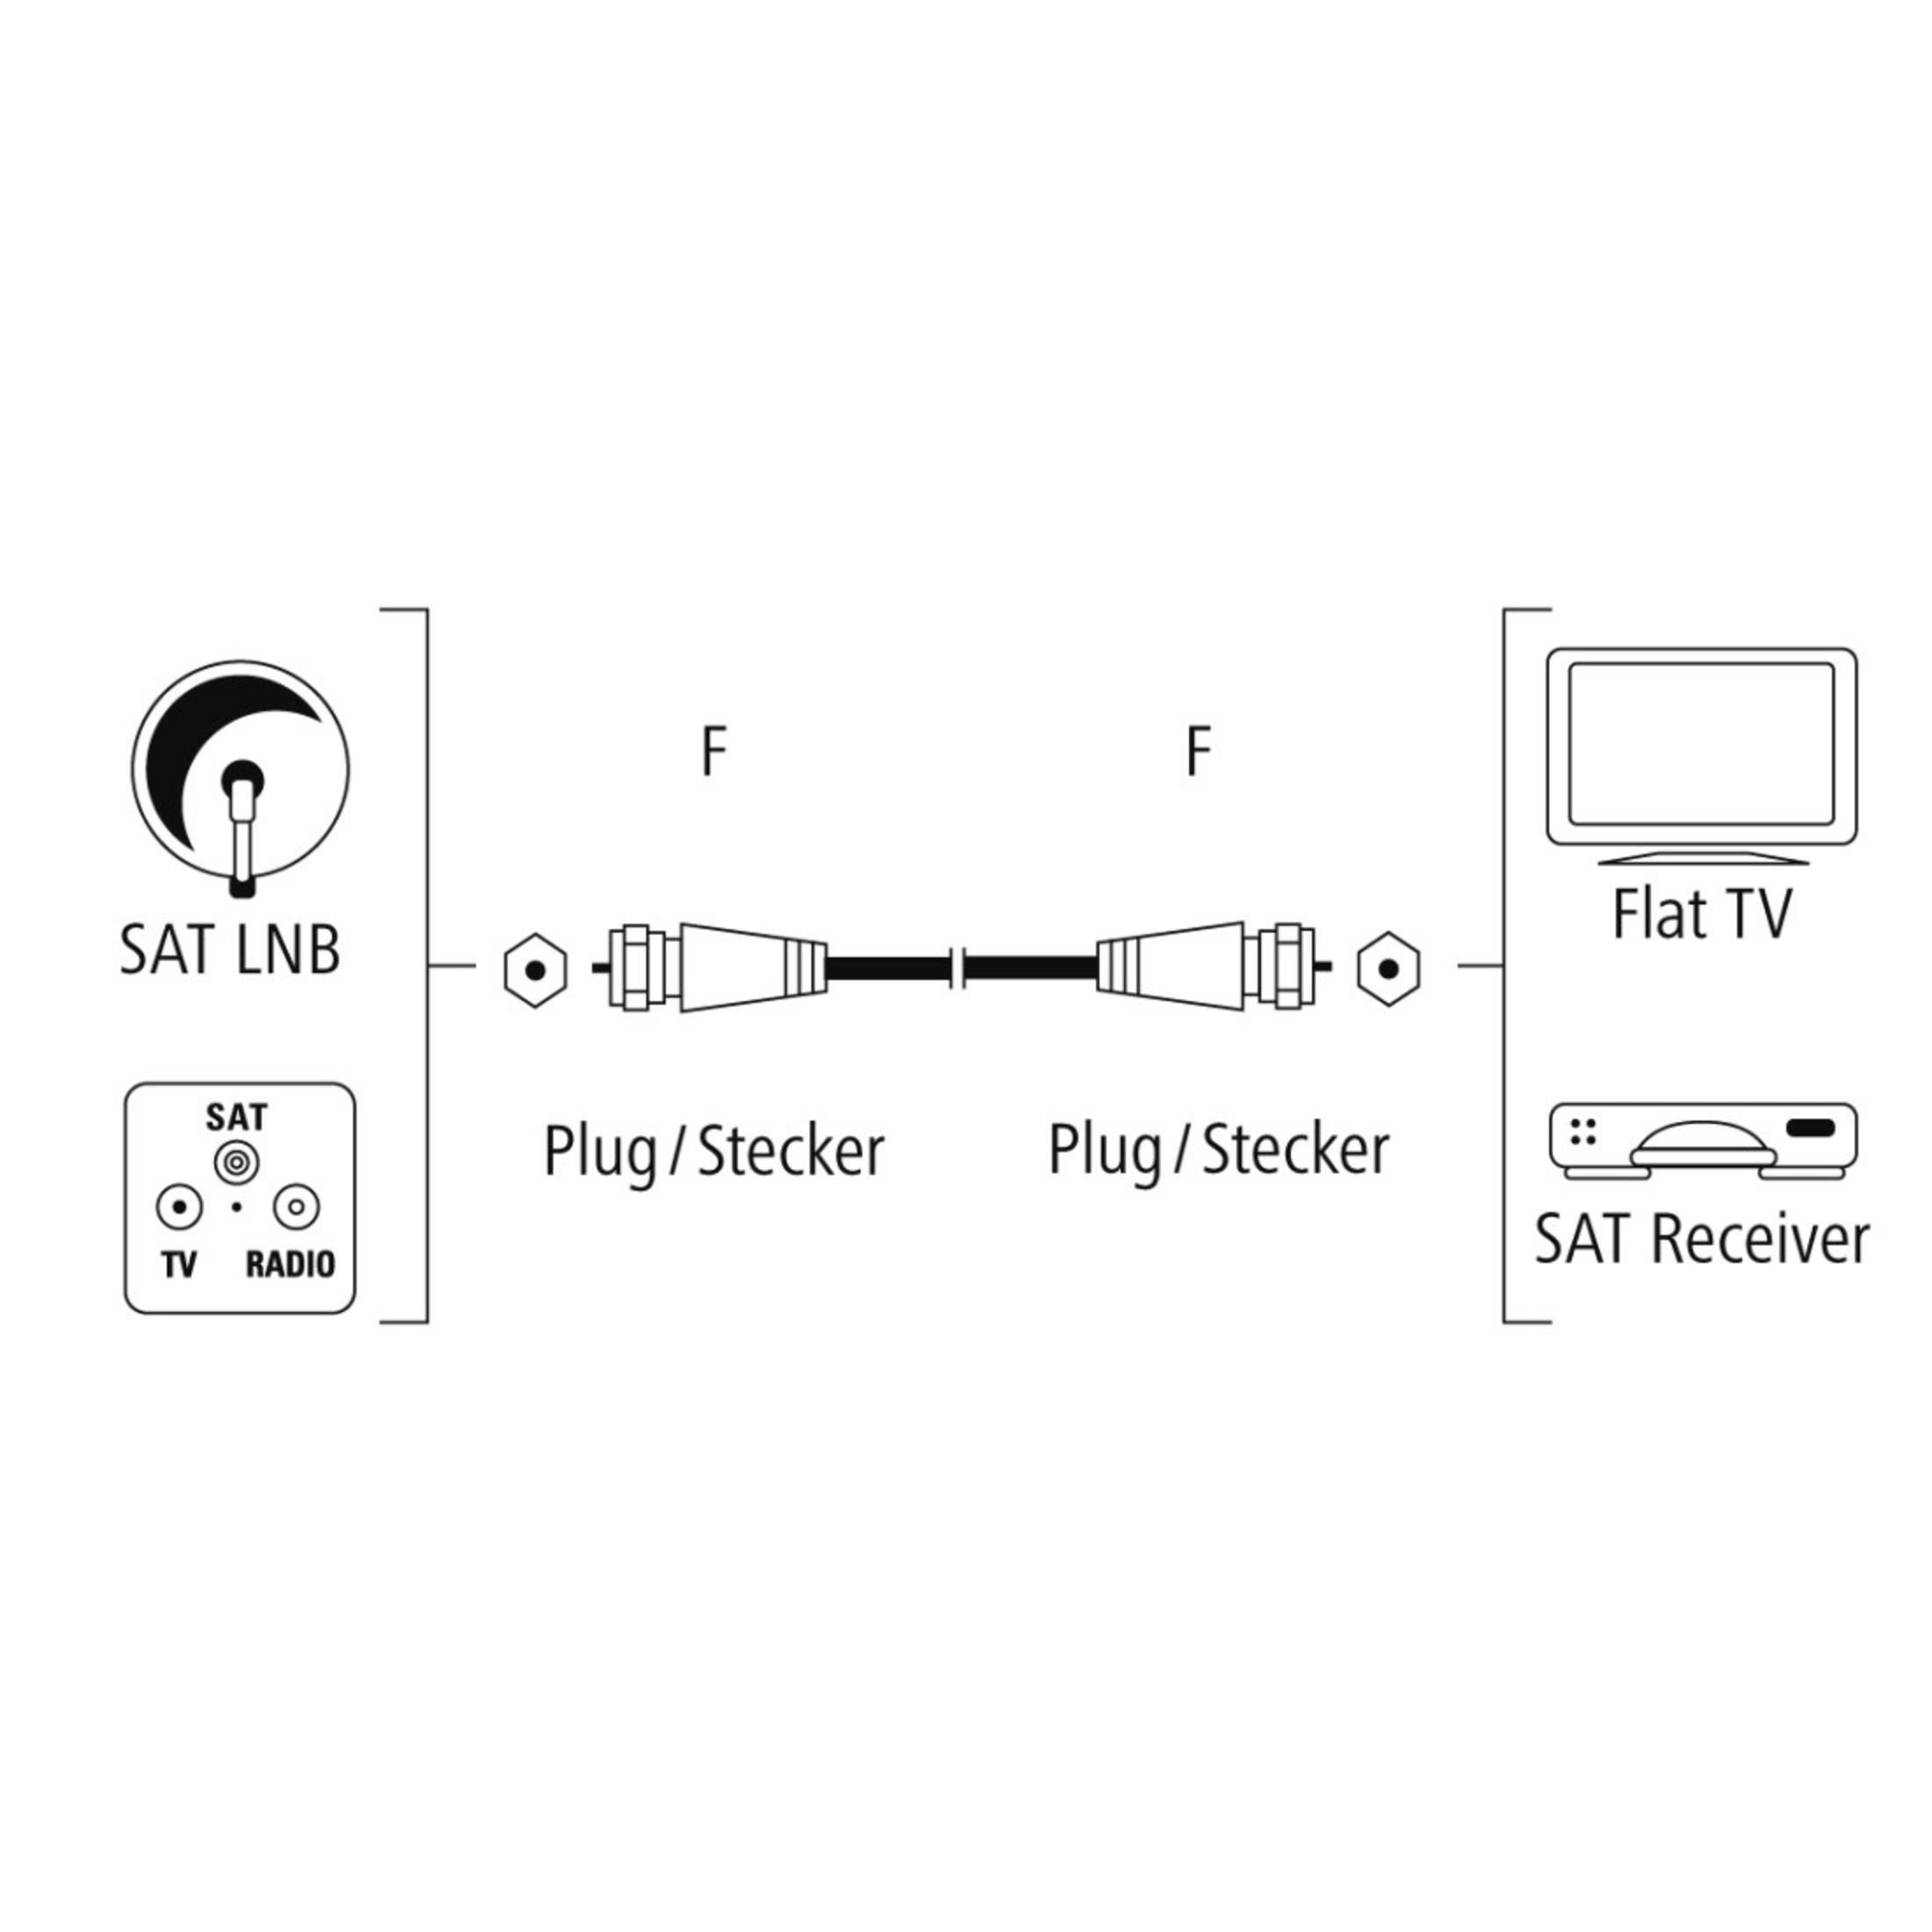 HAMA F-Stecker - F-Stecker SAT-Anschlusskabel